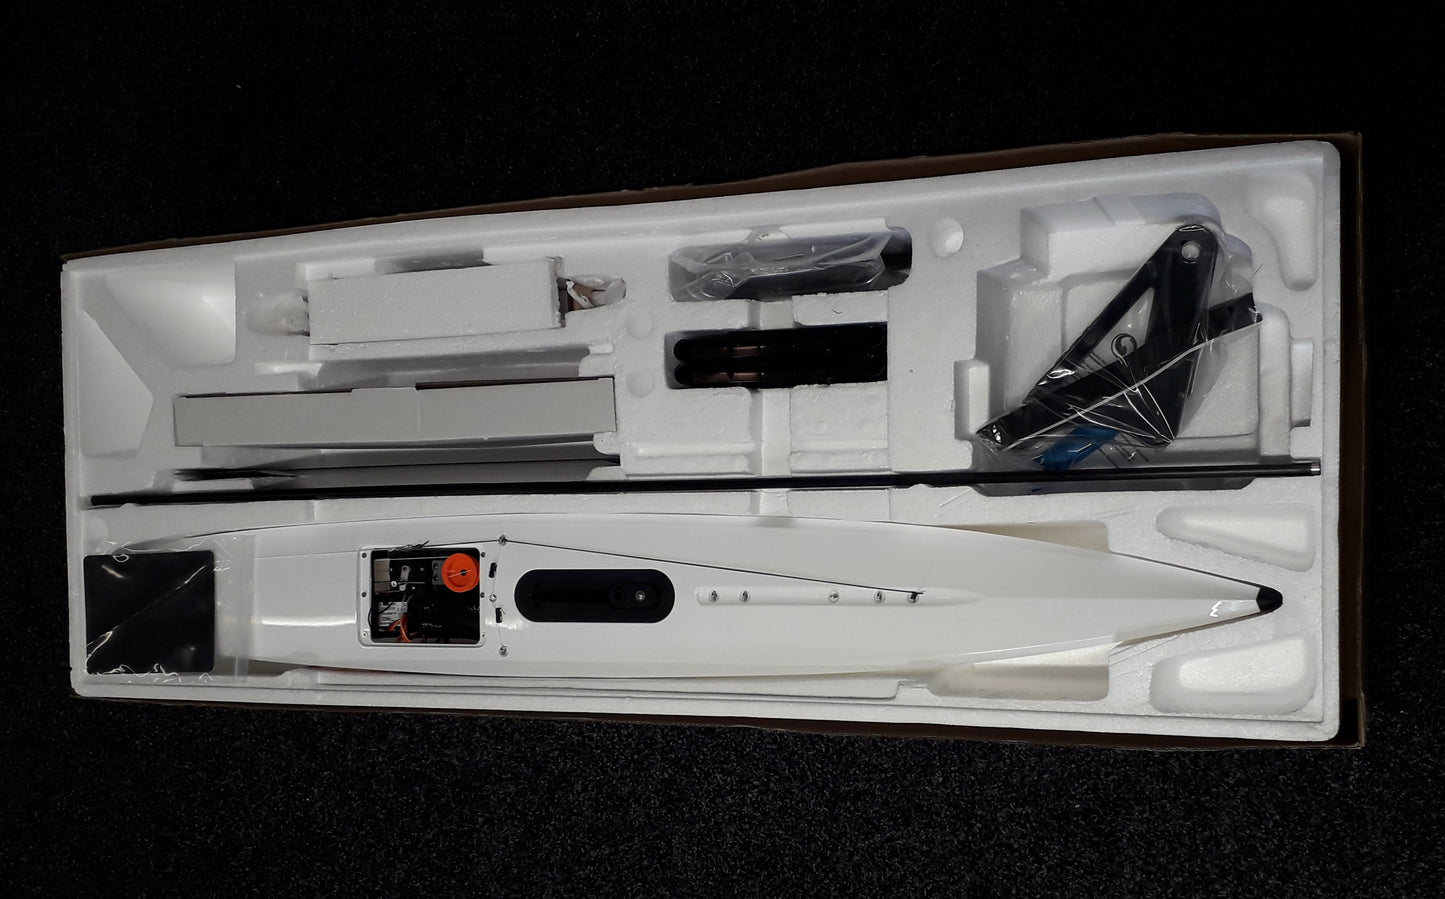 DF95 V2 Complete Boat Kit INCLUDEDS UPGRADE TO FLYSKY i6 TRANSMITTER & RECEIVER